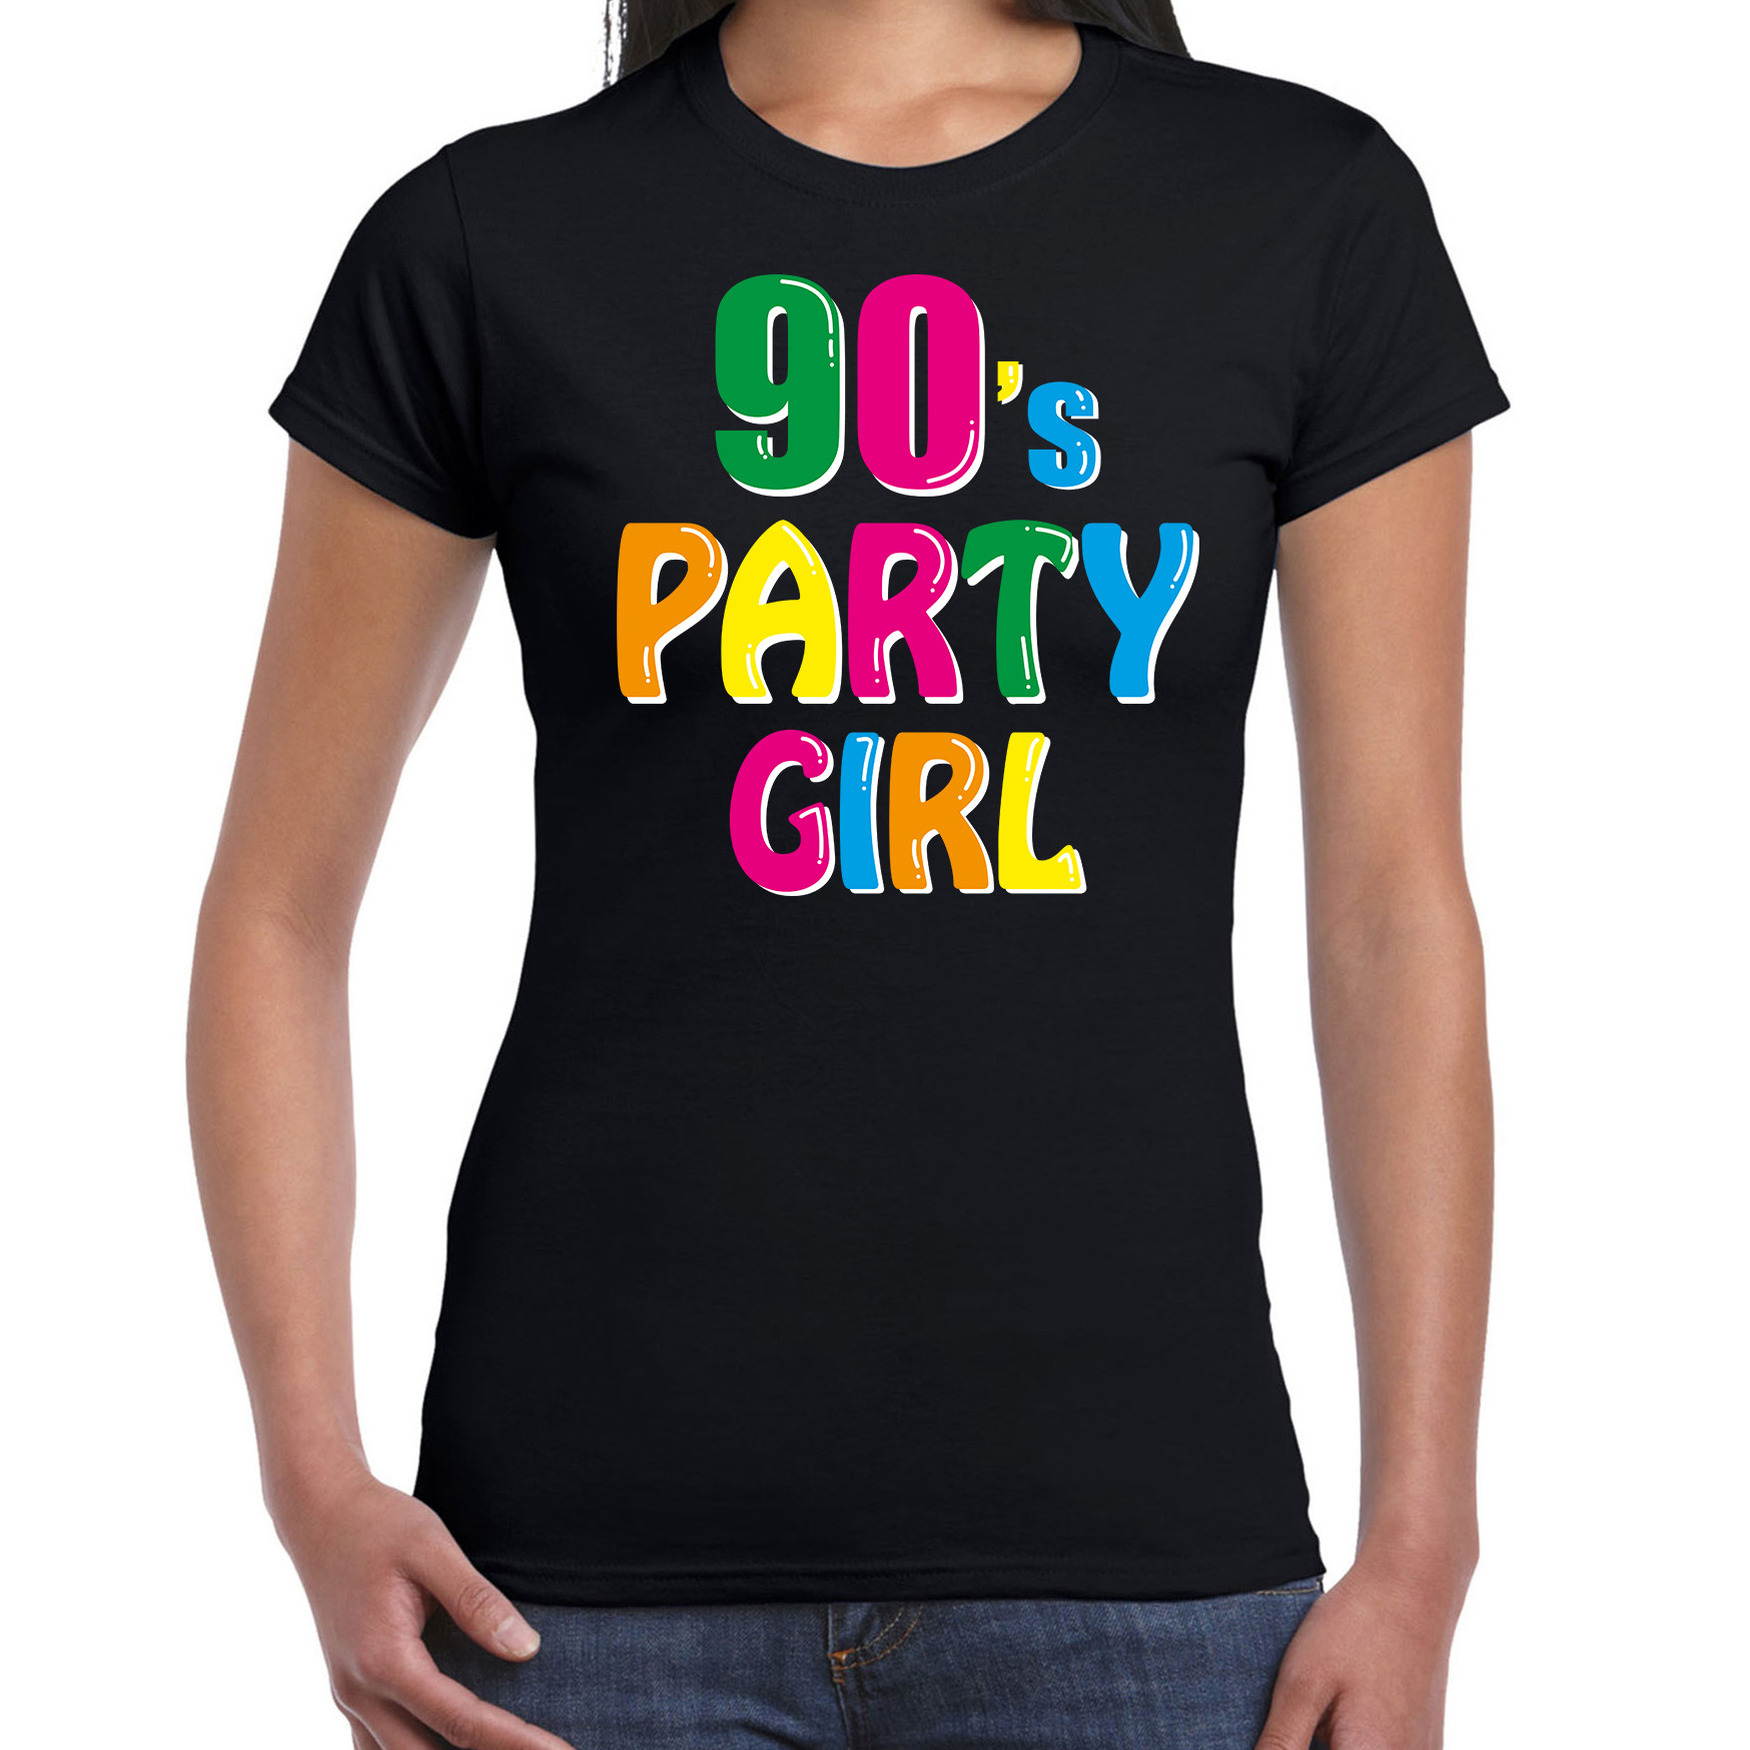 Nineties / 90s party girl verkleed feest t-shirt zwart voor dames - Jaren 90 / negentig verkleden